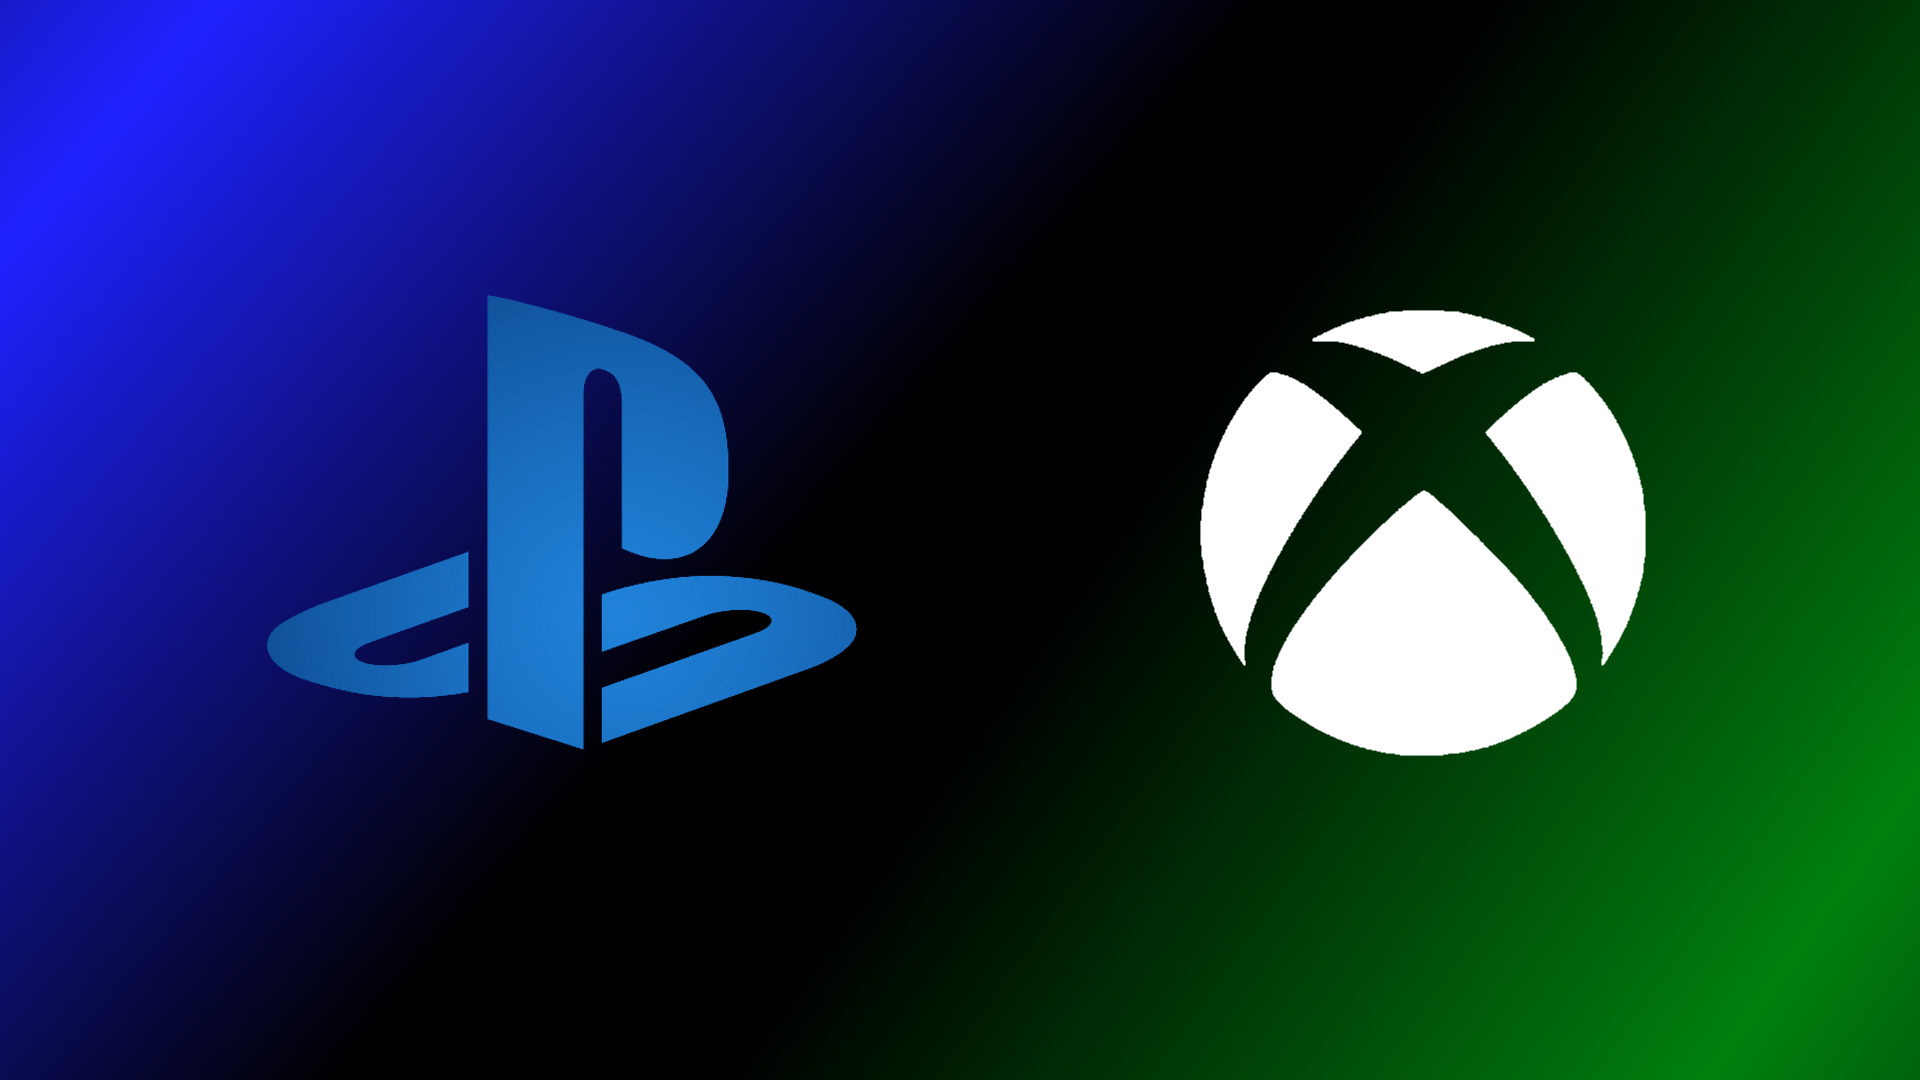 Analisi delle vendite globali delle console PlayStation 5, Xbox Series X|S nel periodo 2020-2027